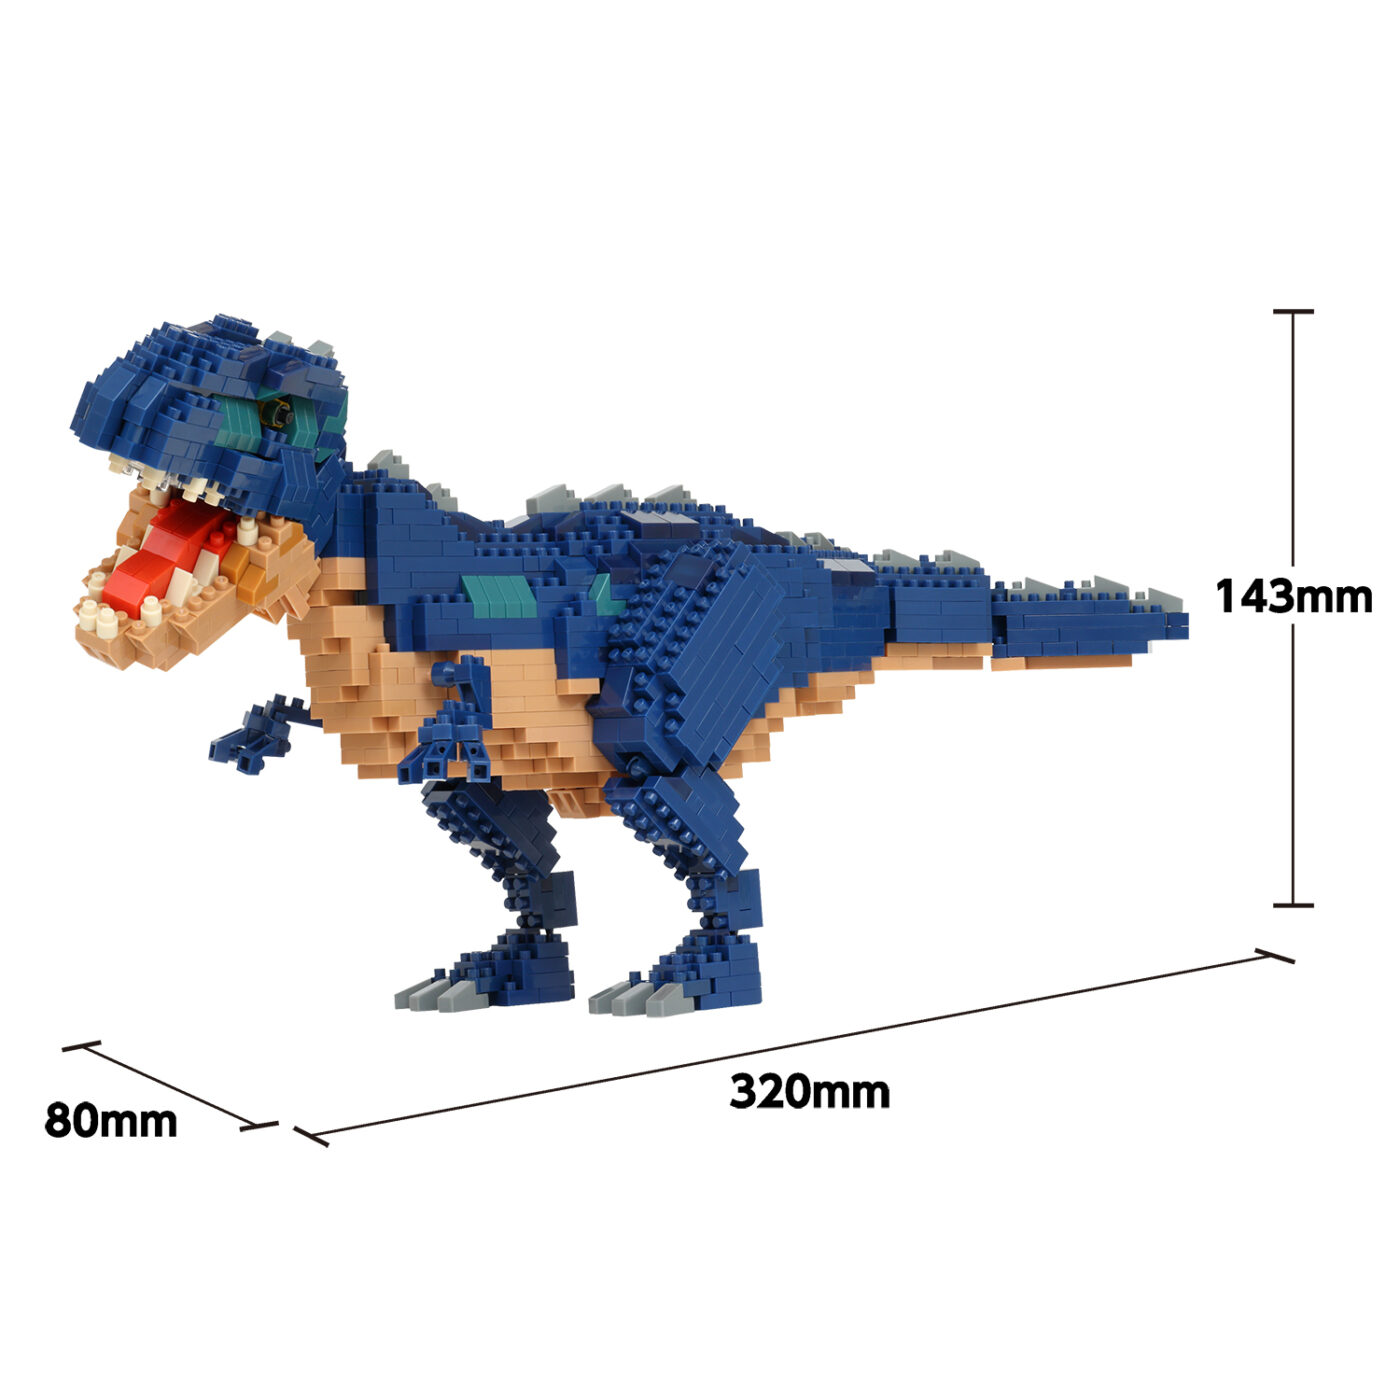 ダイナソーDX ギガノトサウルスの商品画像9